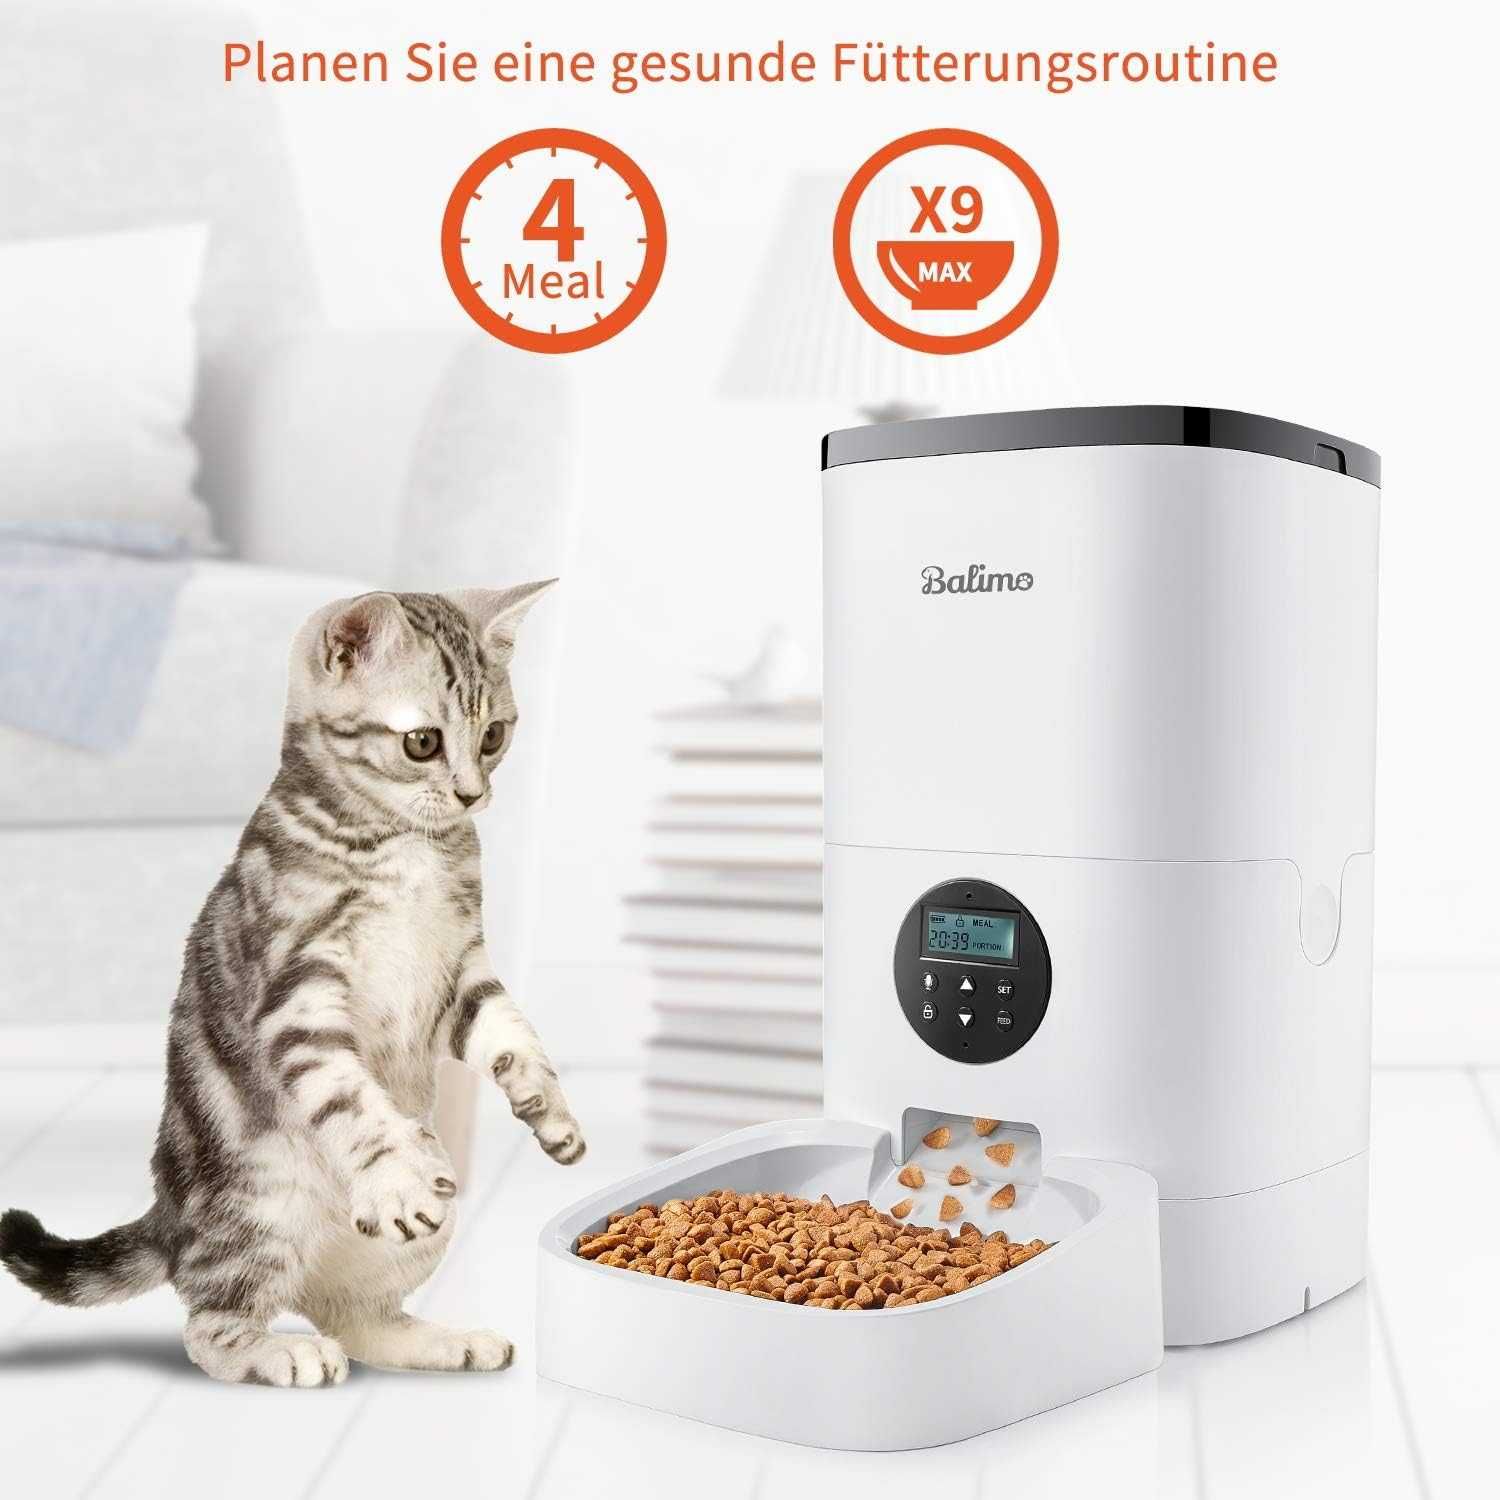 Balimo Duke automatyczny dozownik podajnik karmy dla kotów i psów, 4l